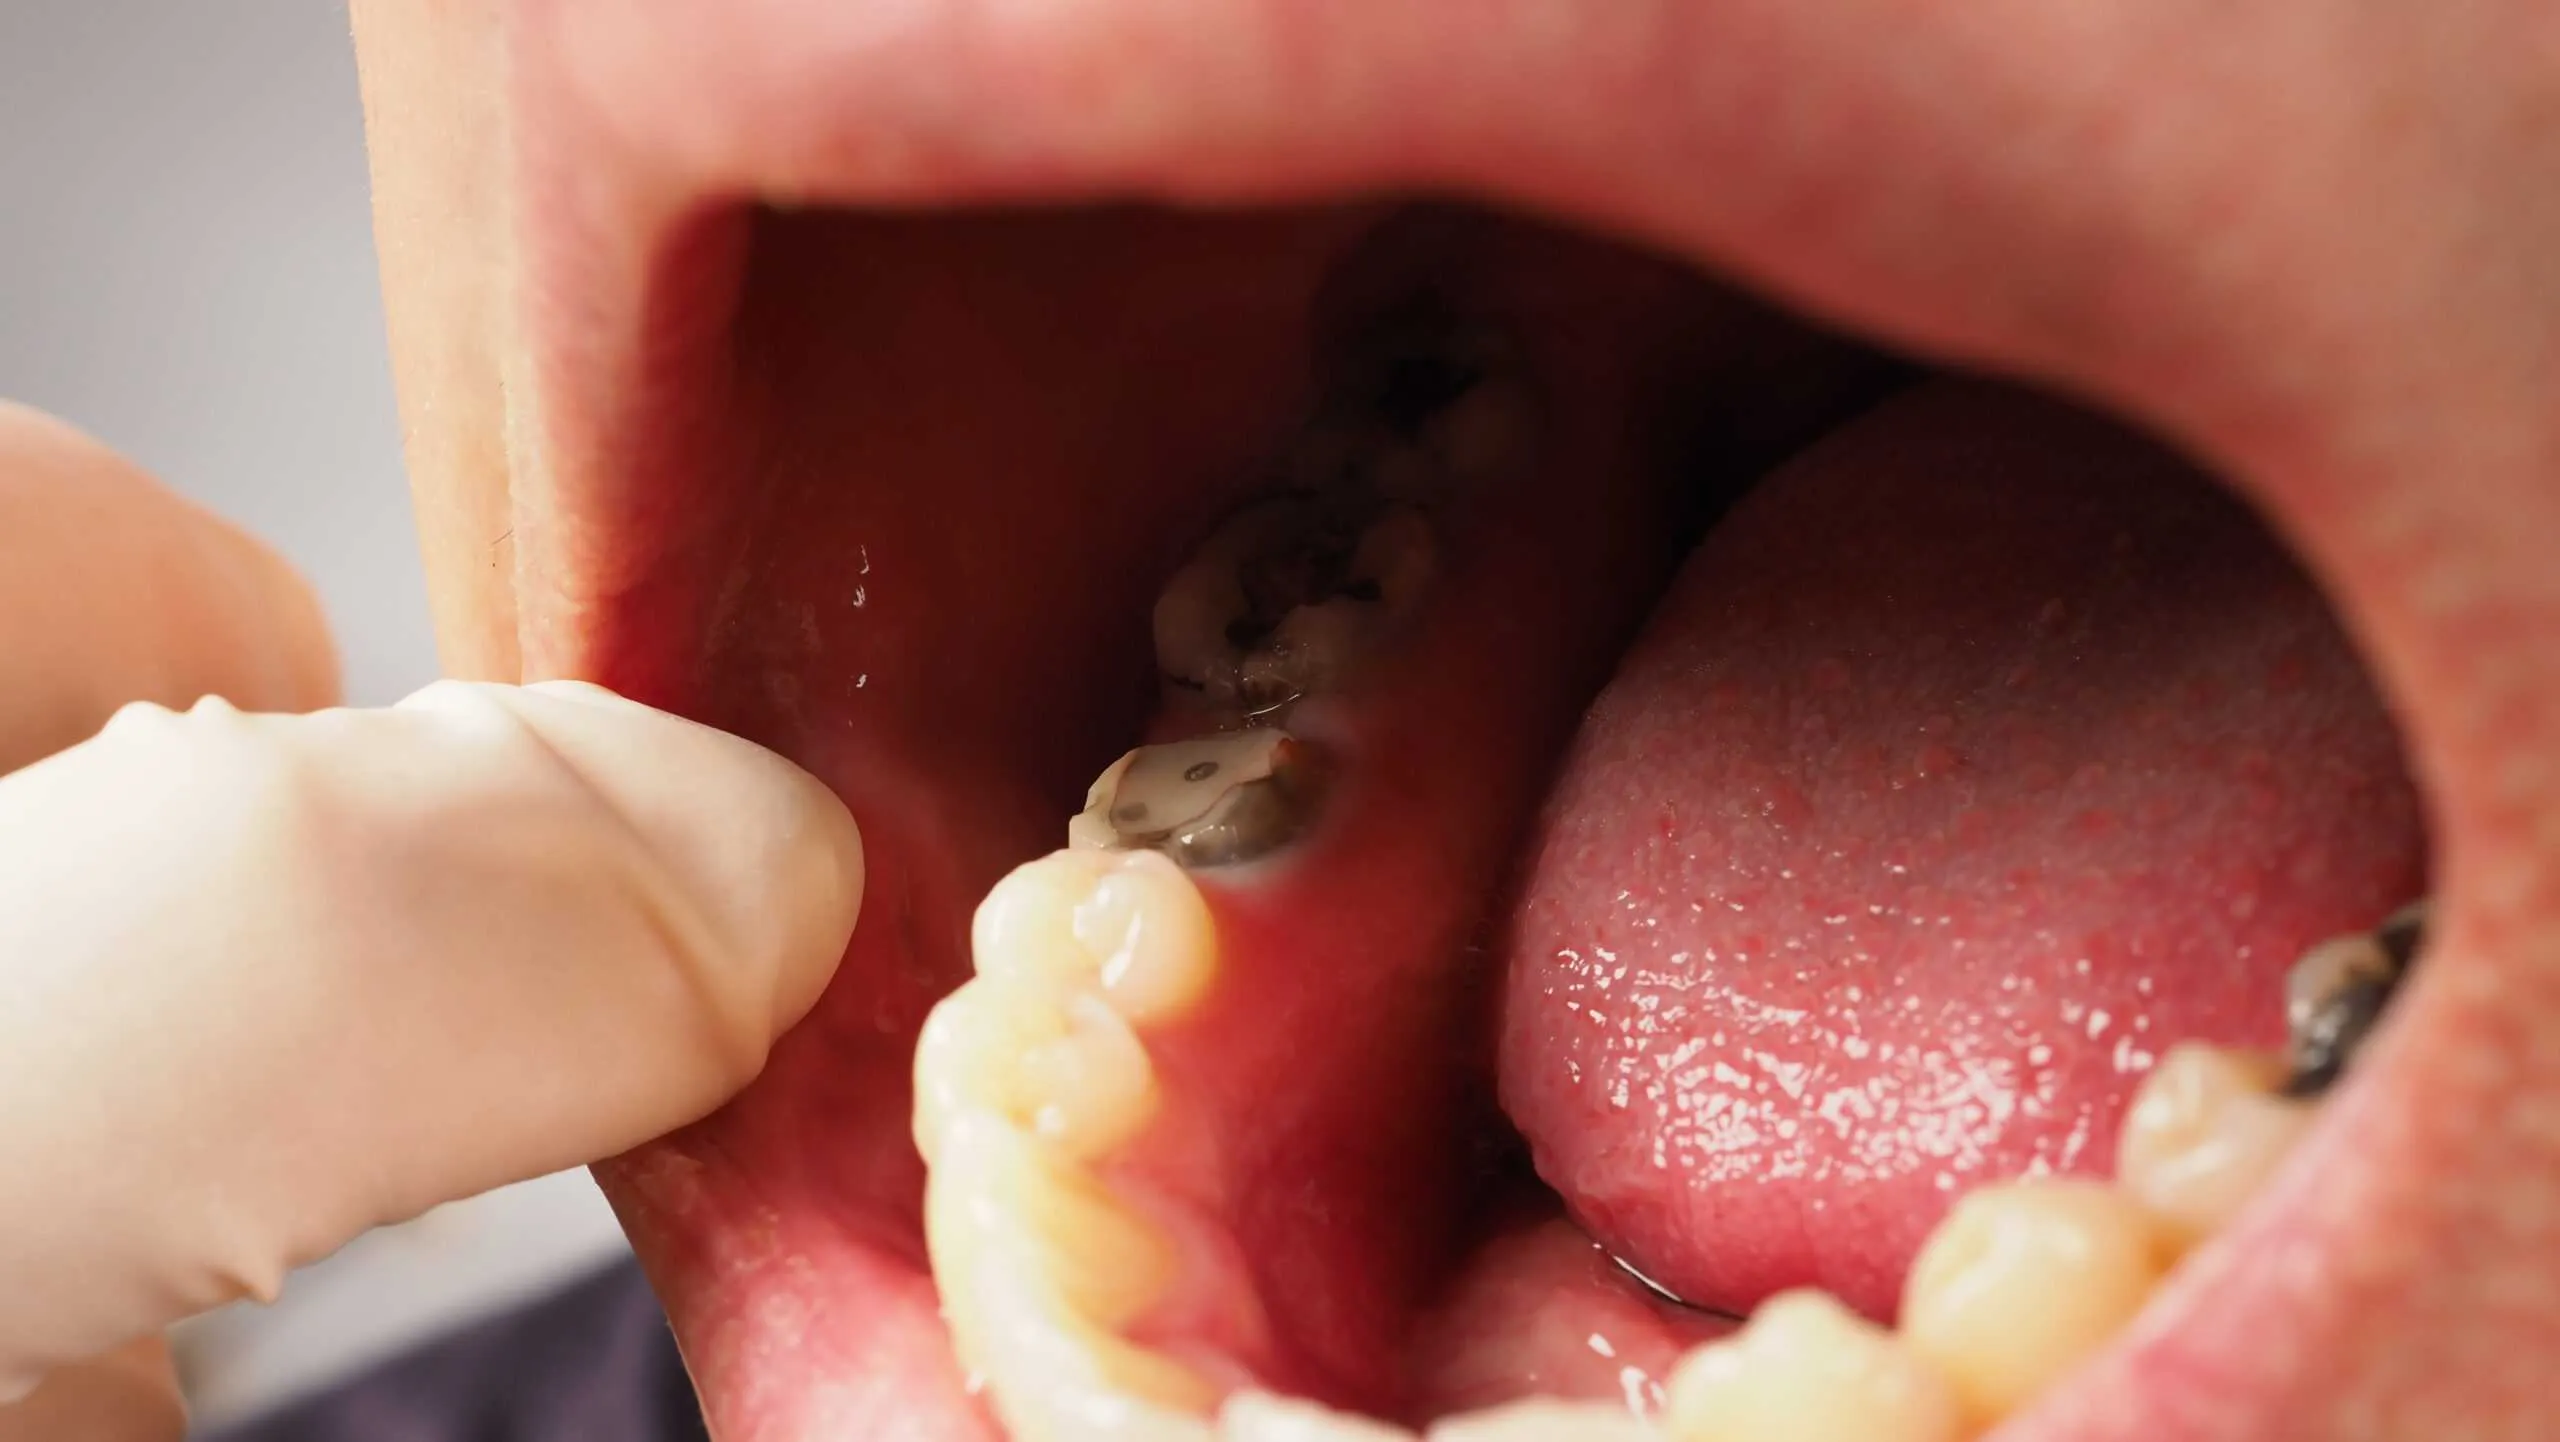 Răng cấm tiếp xúc nhiều với thức ăn nên dễ bị sâu răng